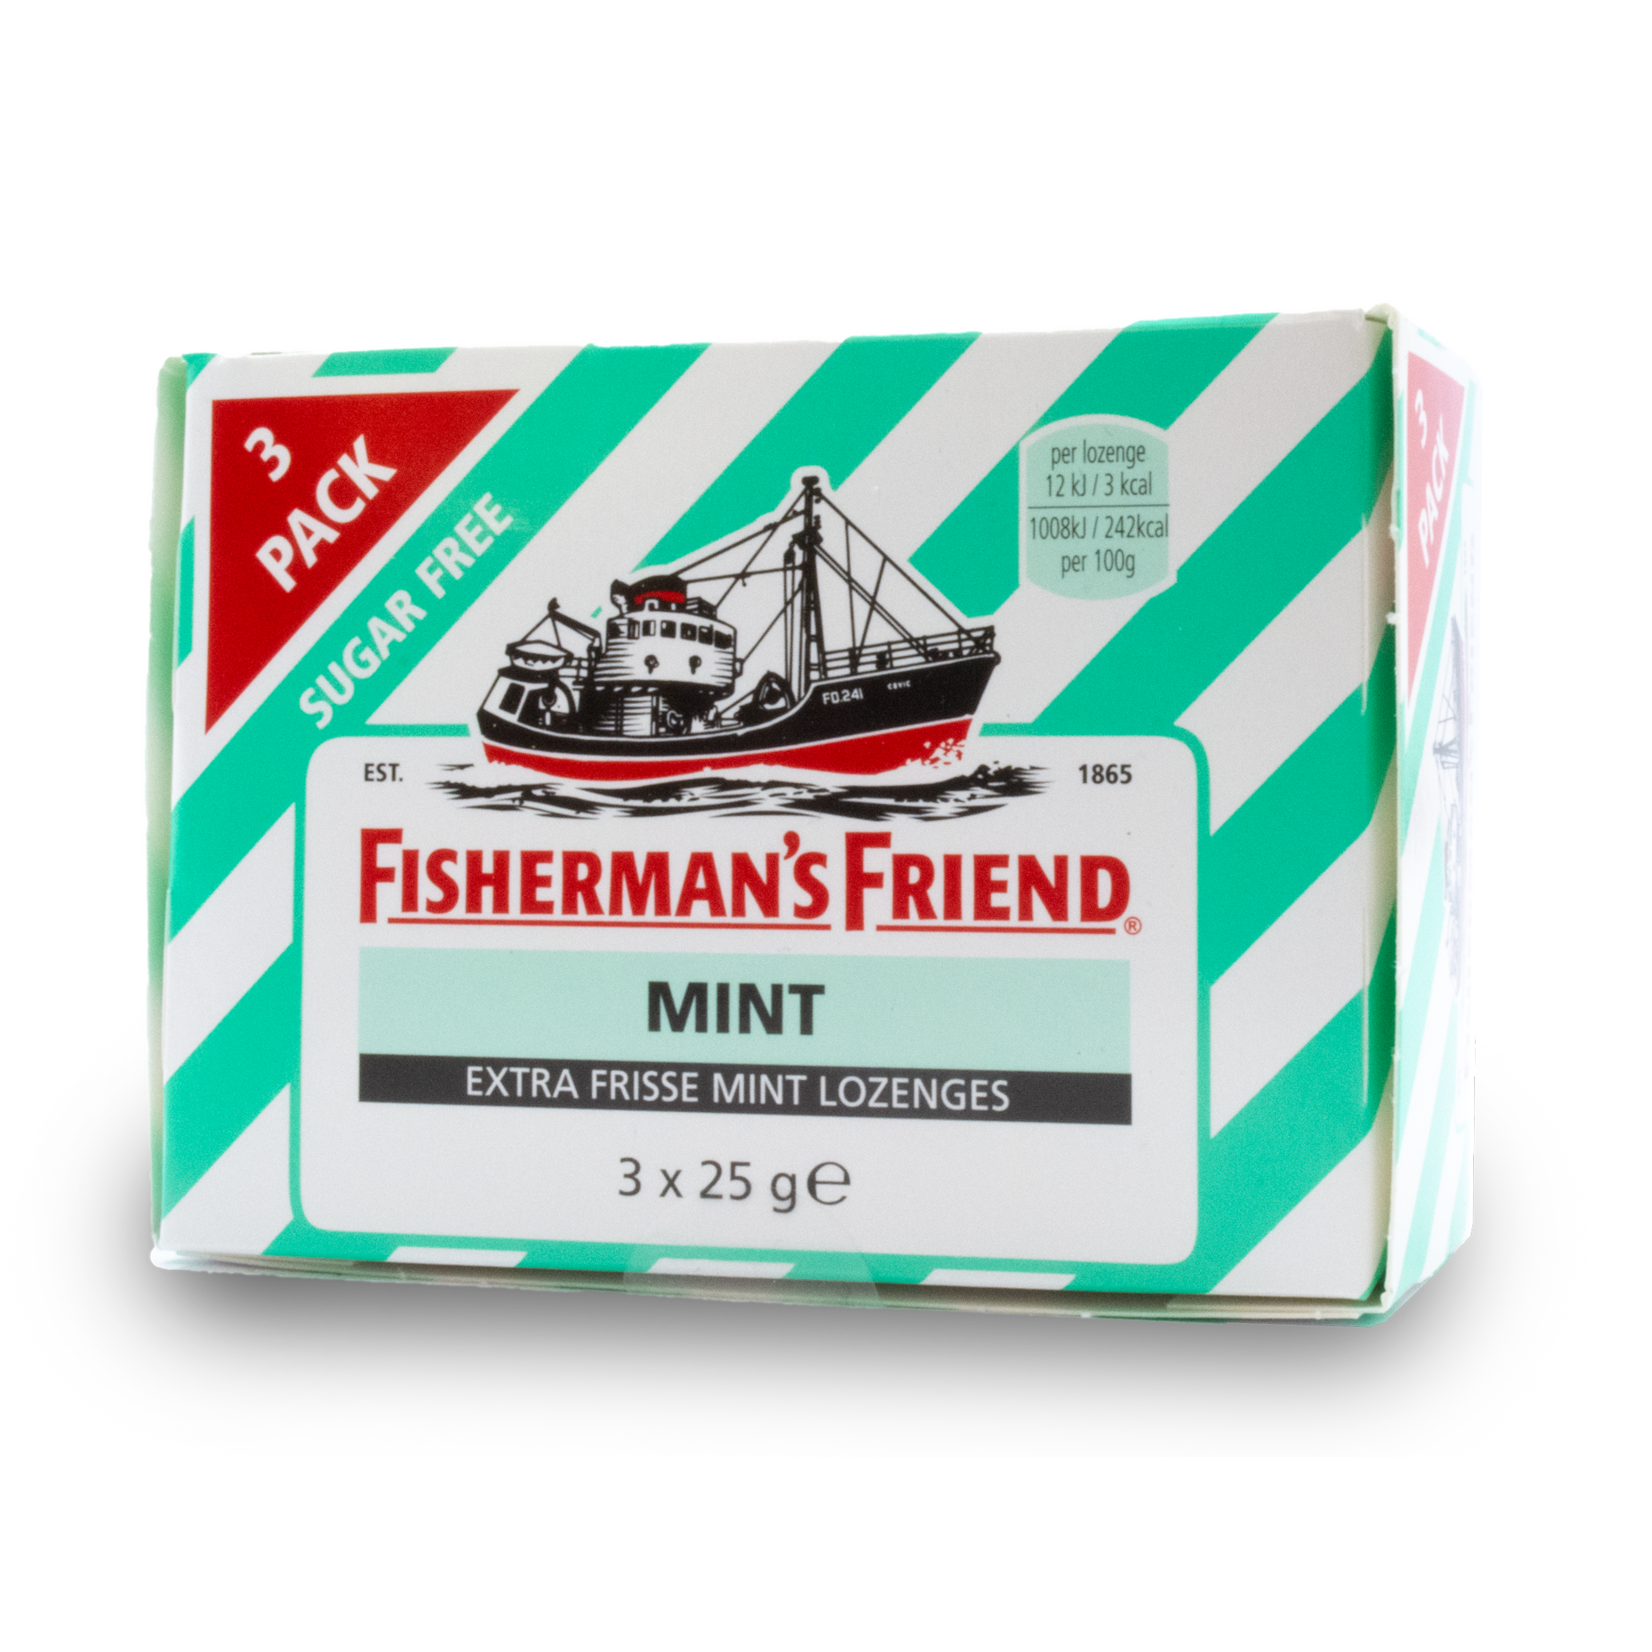 Fisherman's Friend Fisherman's Friend Mint Sugar Free 3pk 3X25g